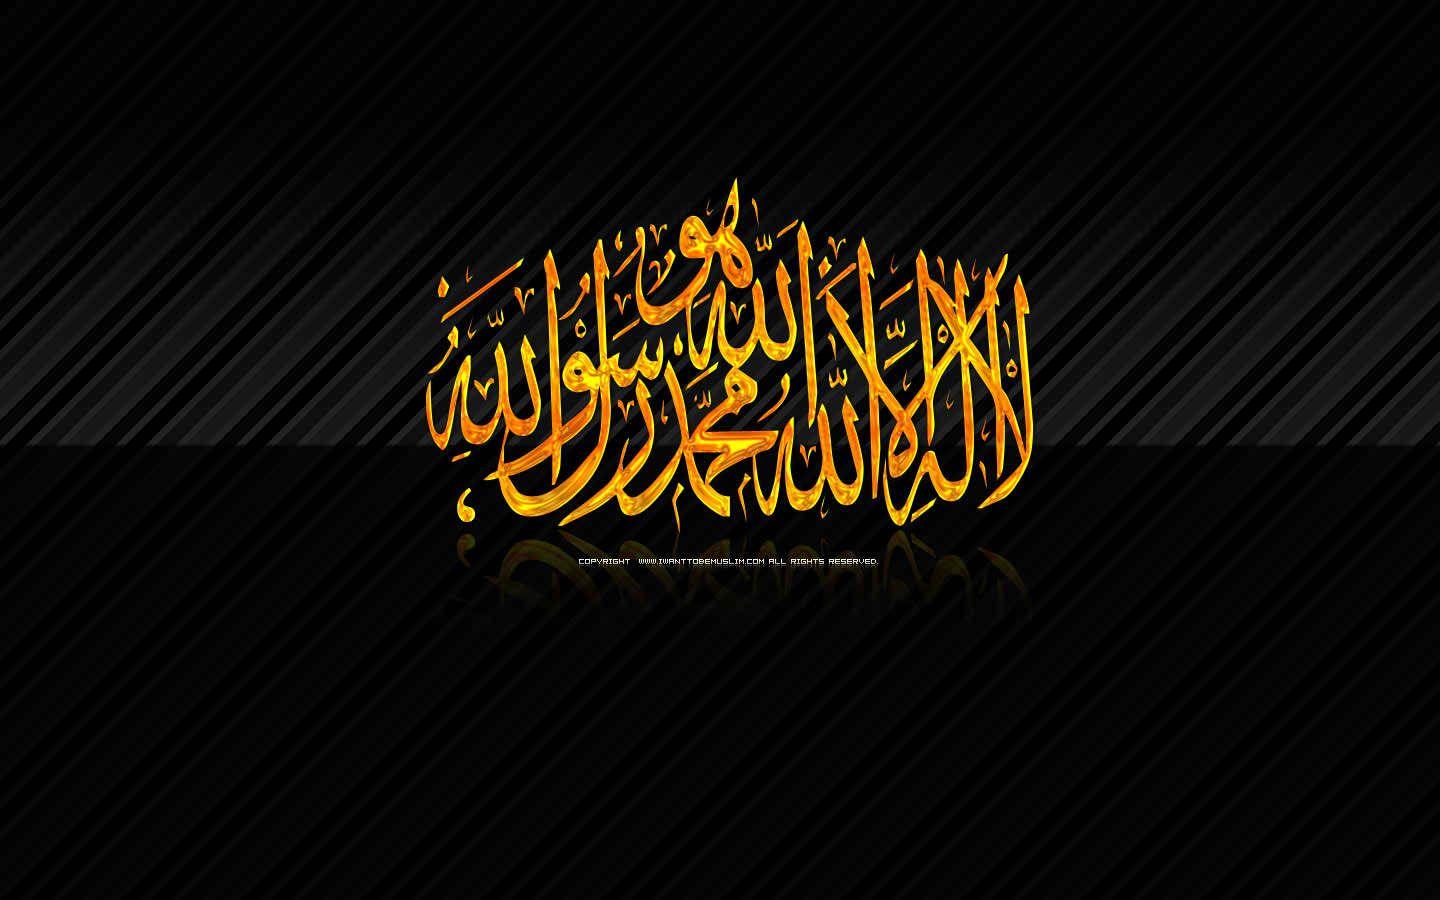 HD Islamic Picture 6243. Islamic wallpaper, Islamic wallpaper hd, Online quran